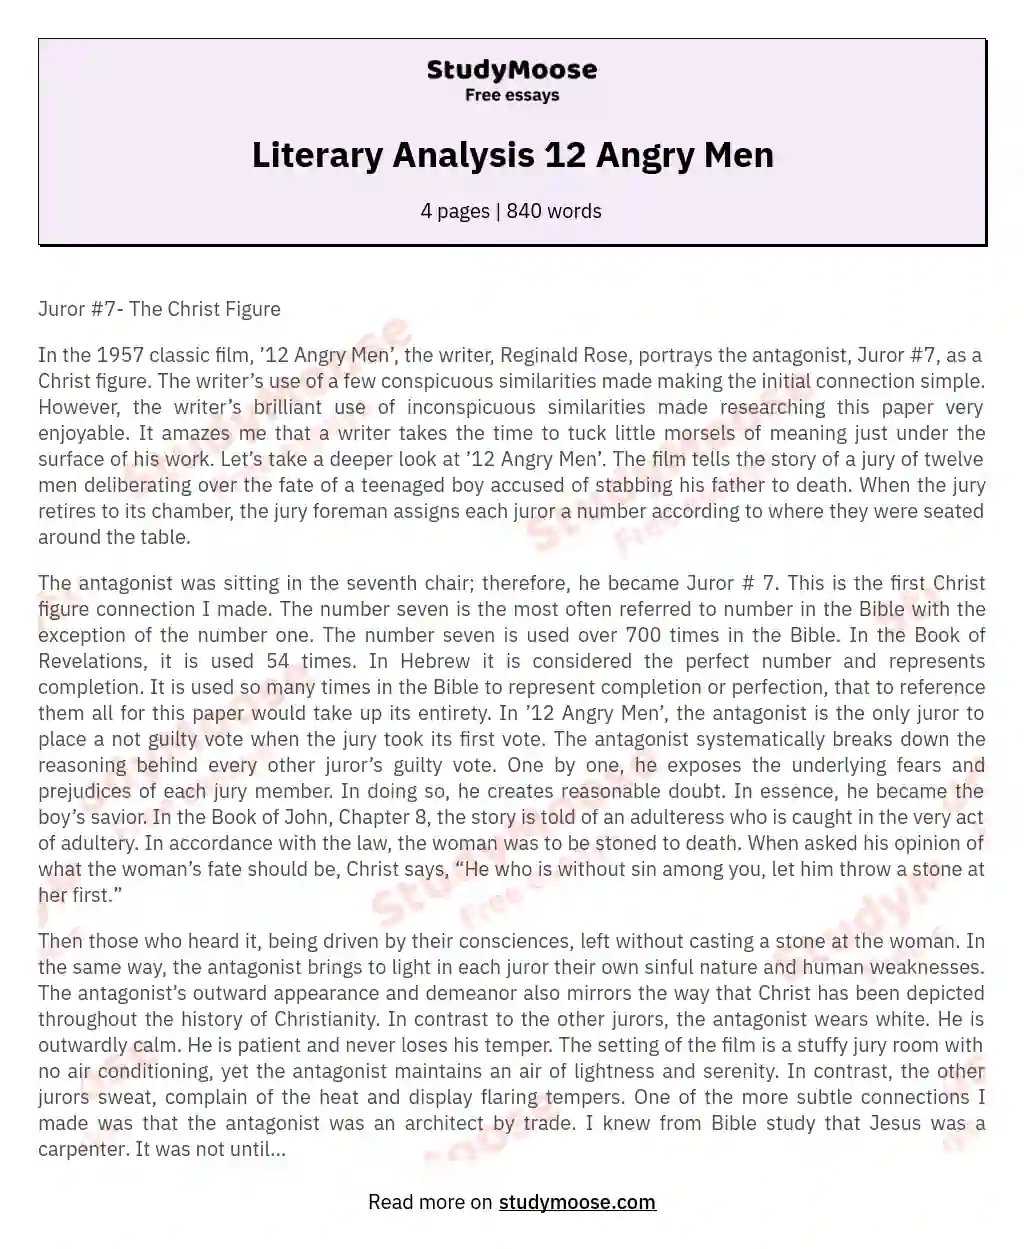 Literary Analysis 12 Angry Men